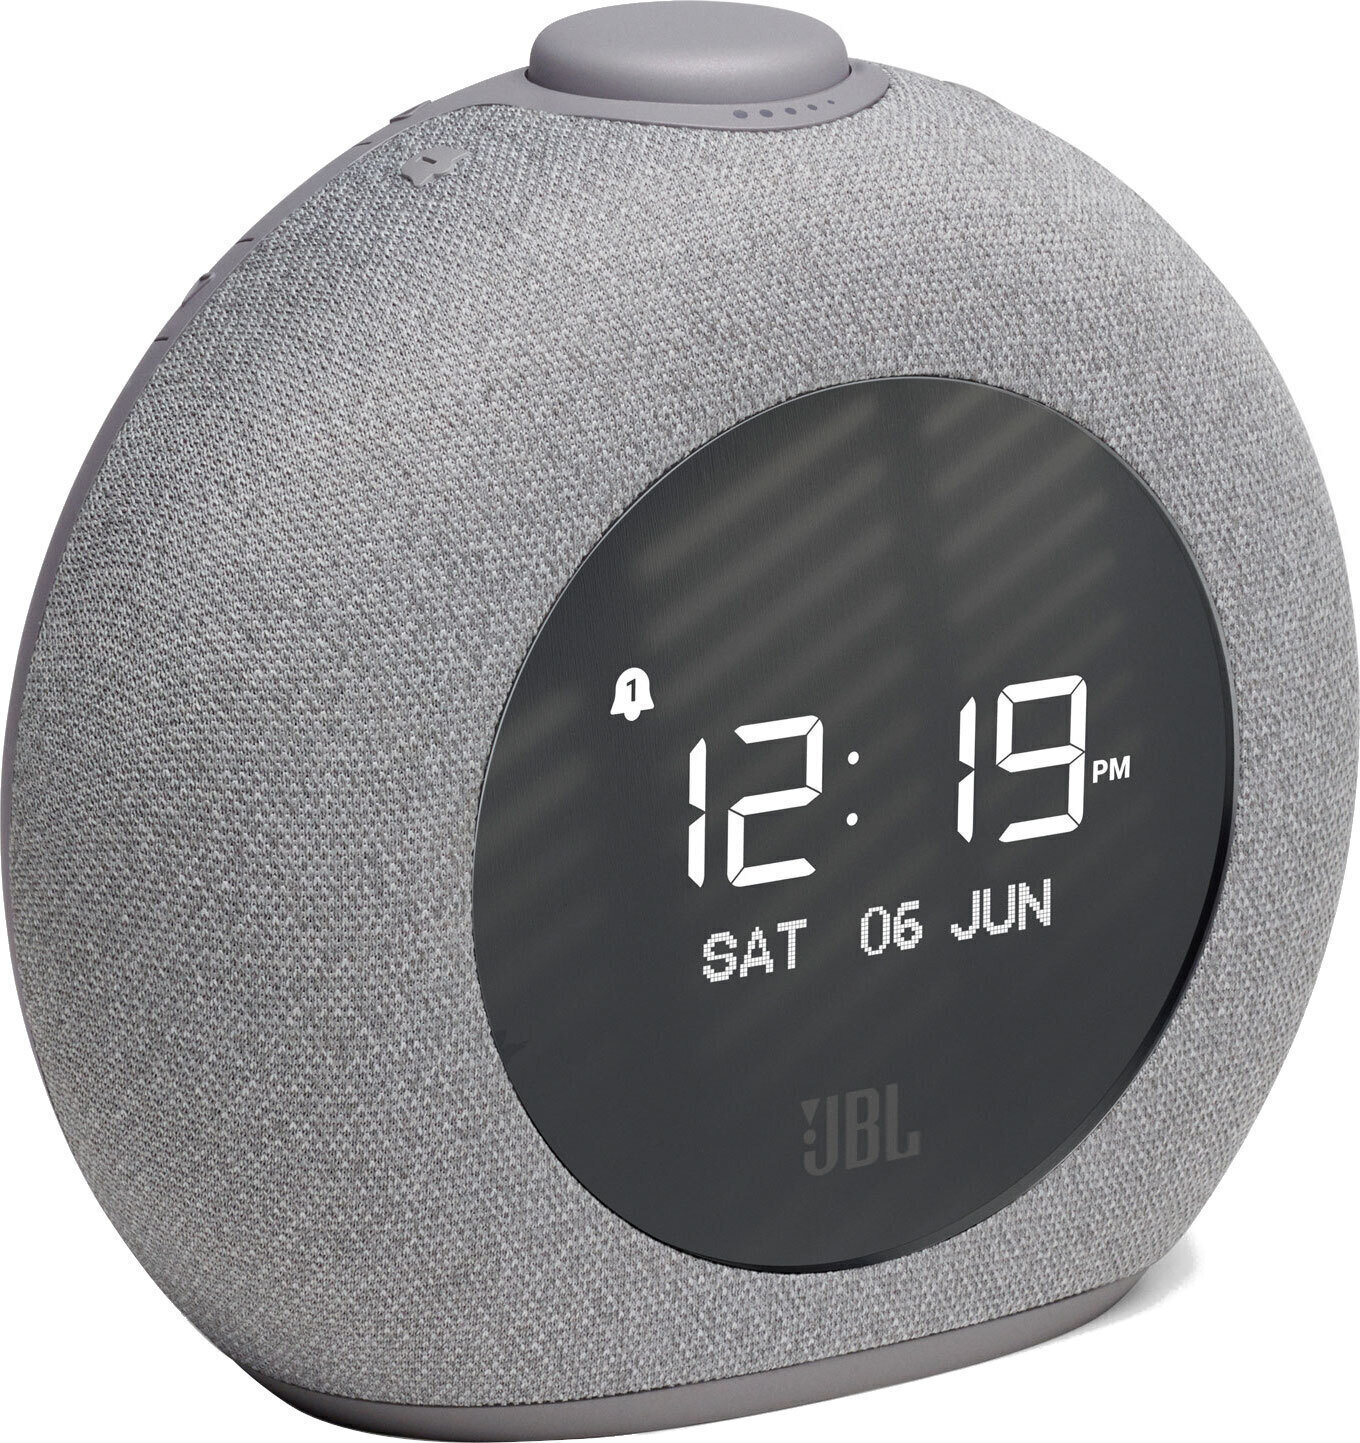 Radio alarm clock
 JBL Horizon 2 Gray